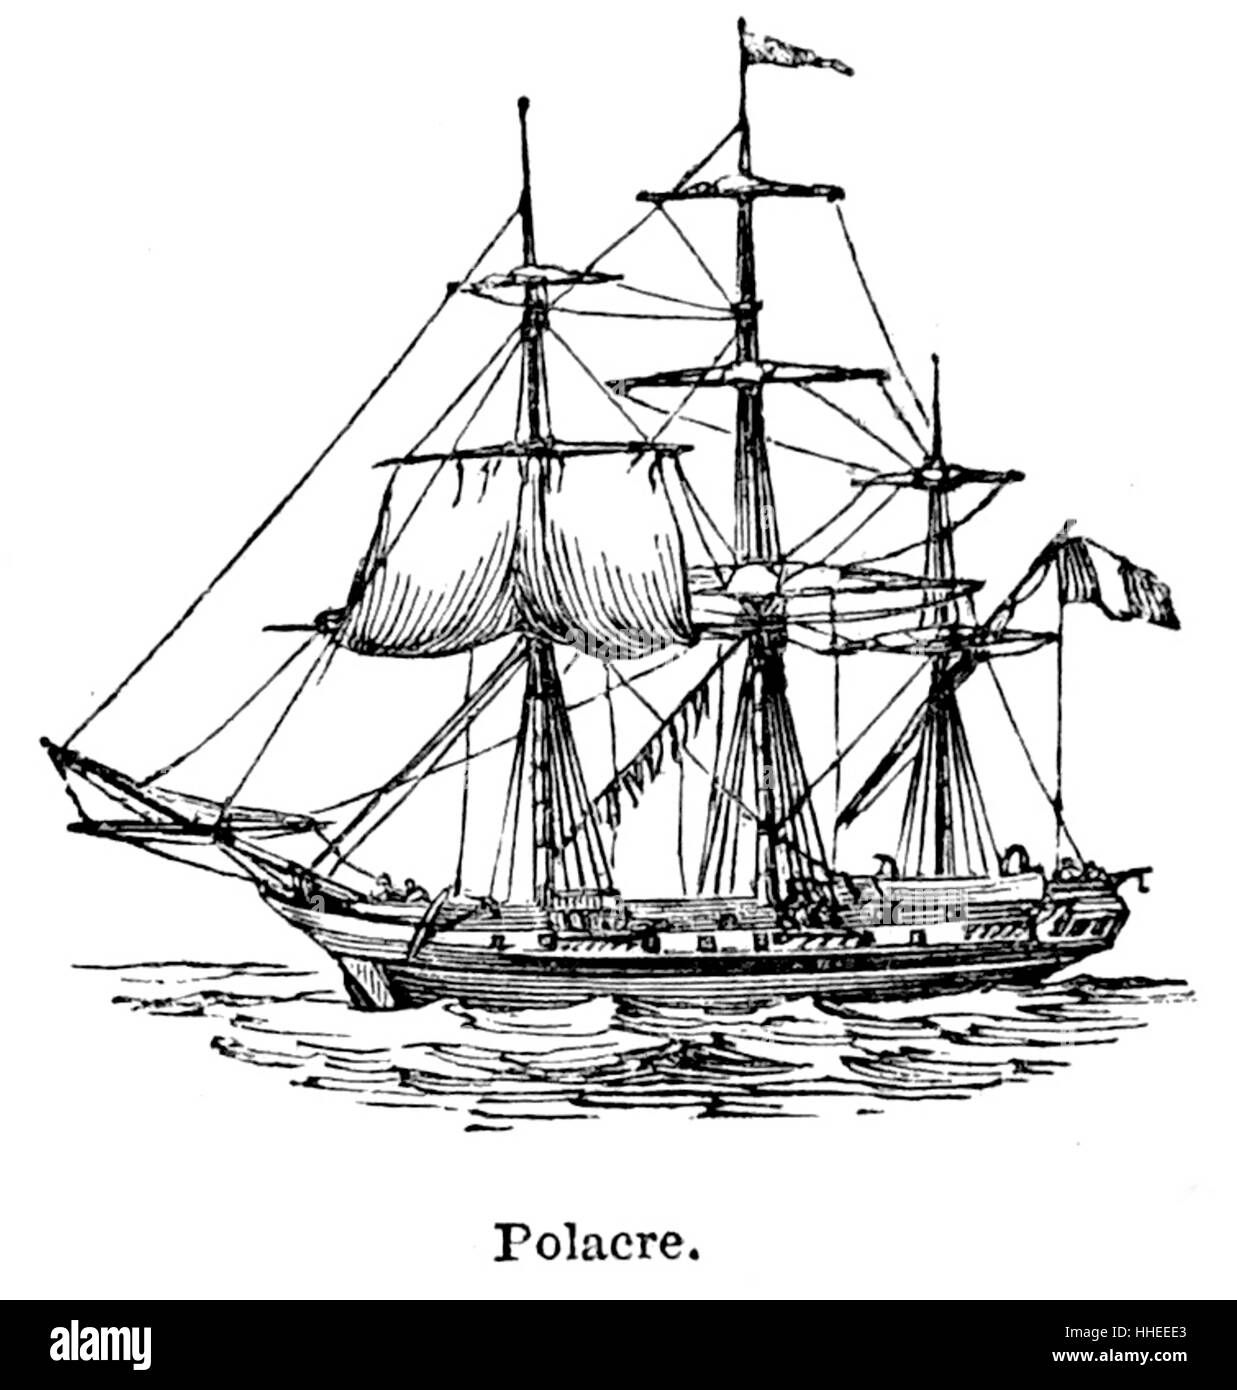 Gravur von einem Polacca, eine Art des siebzehnten Jahrhunderts Segelschiff, ähnlich wie die Schebecke. Vom 19. Jahrhundert Stockfoto